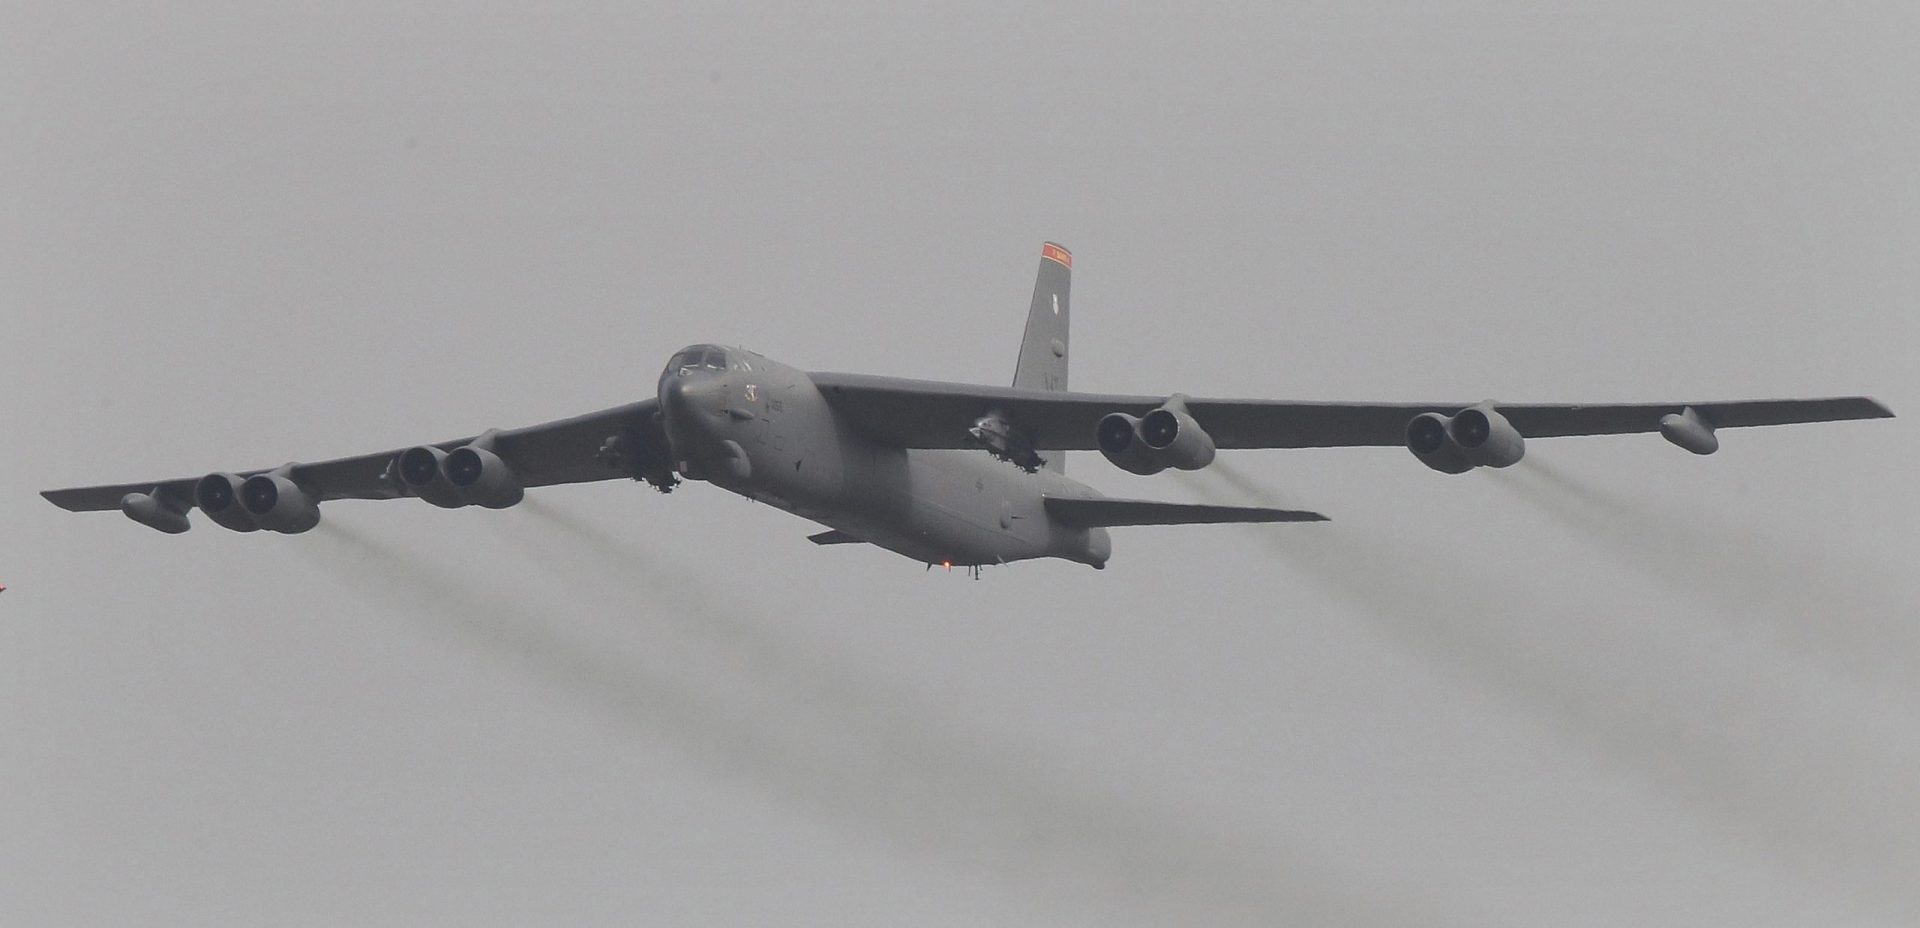 Le jet chinois se rapproche dangereusement du bombardier américain en mer de Chine du Sud: US